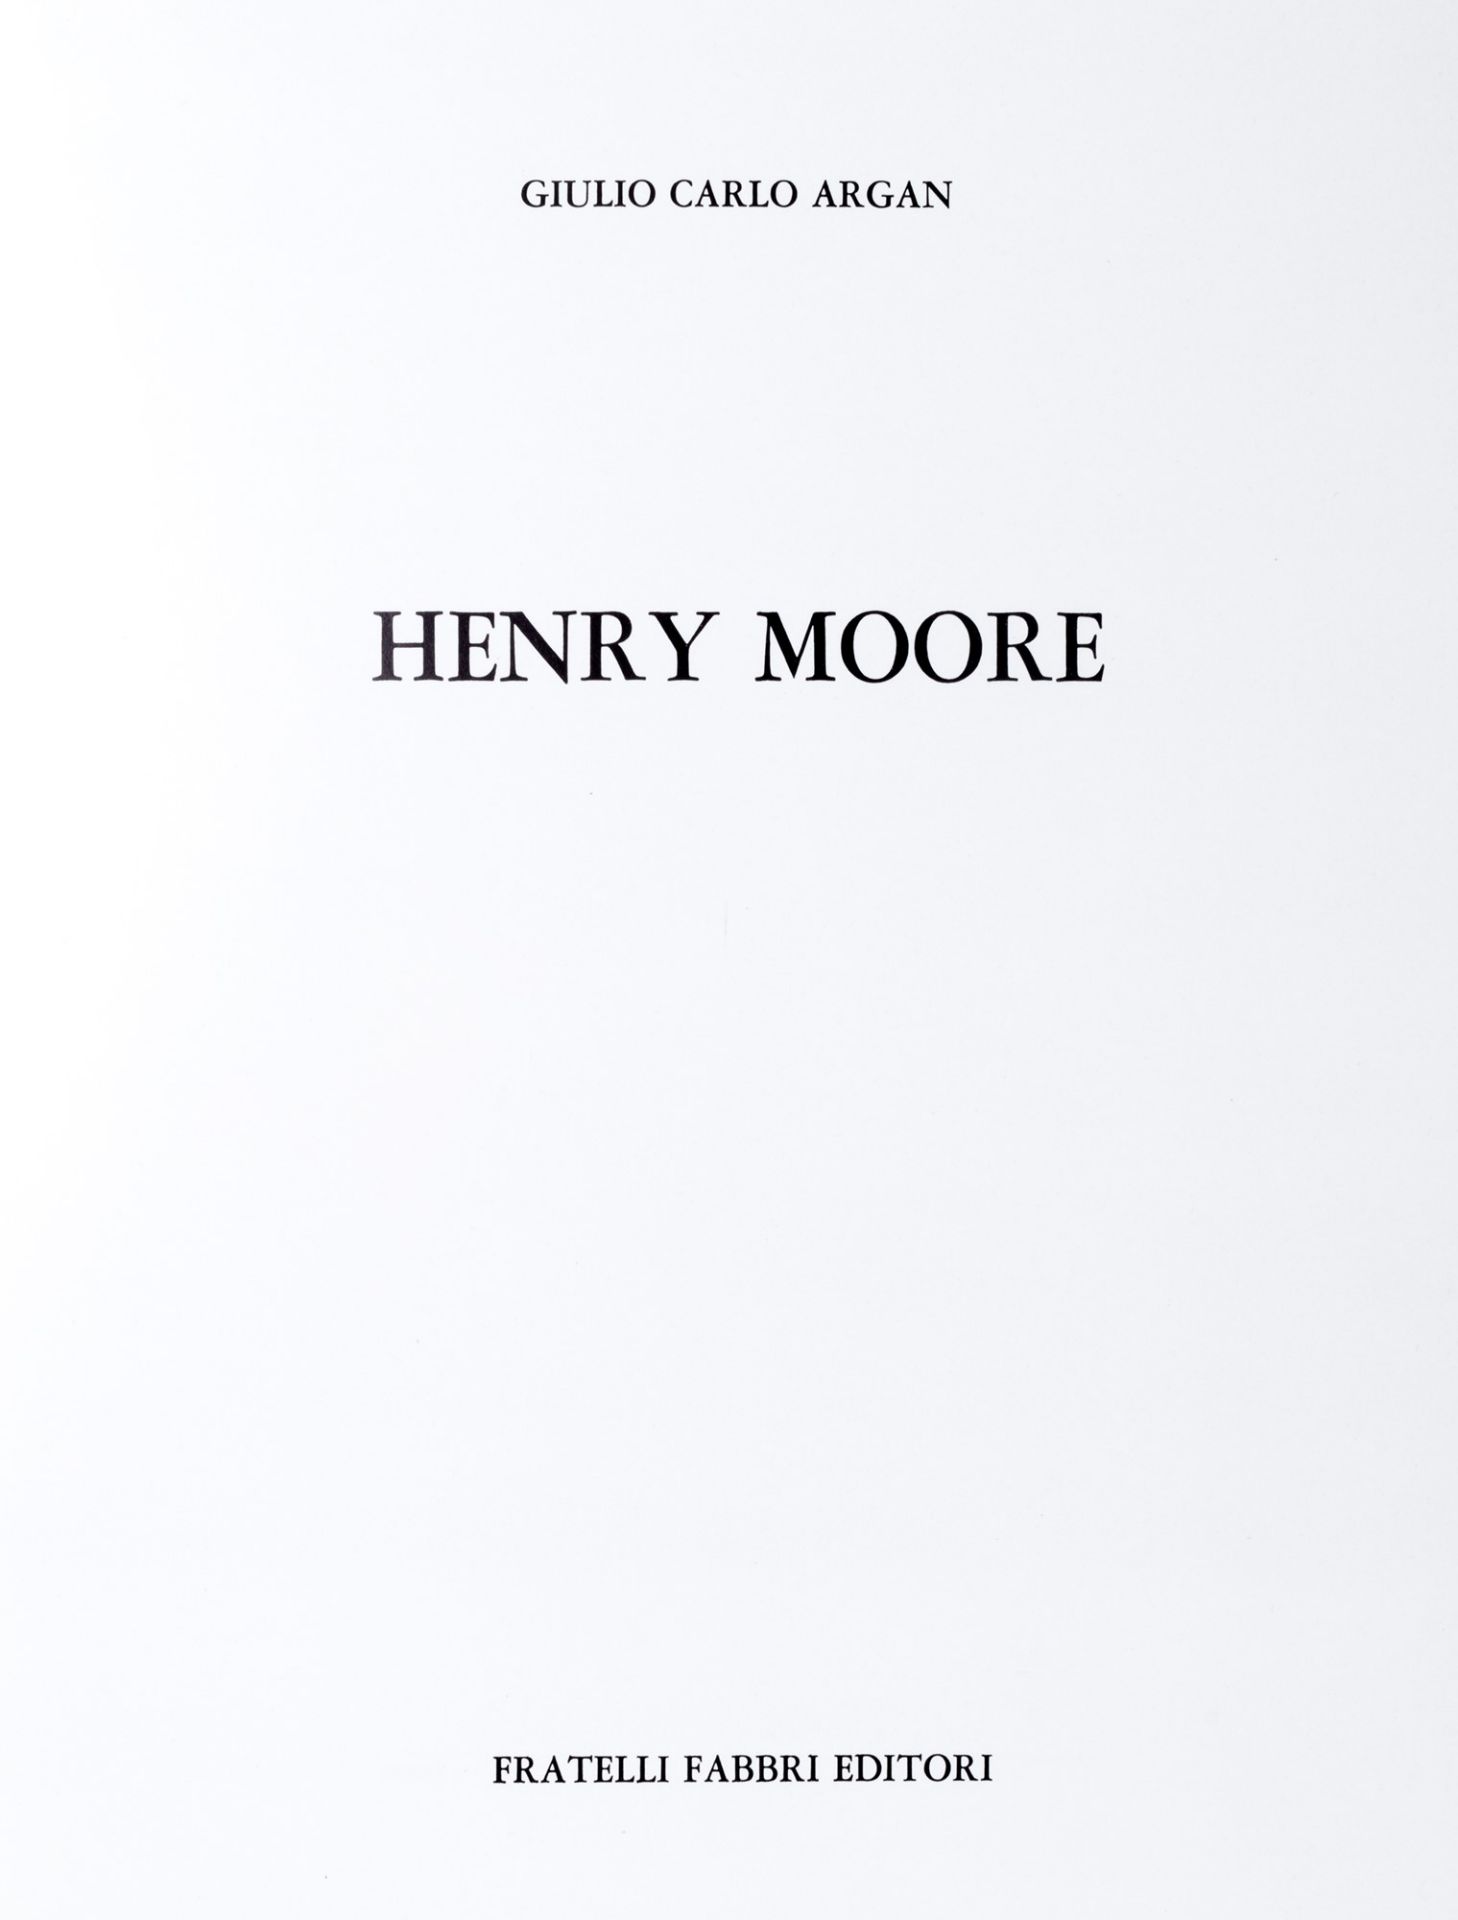 Argan, Giulio Carlo - Henry Moore - Bild 3 aus 3